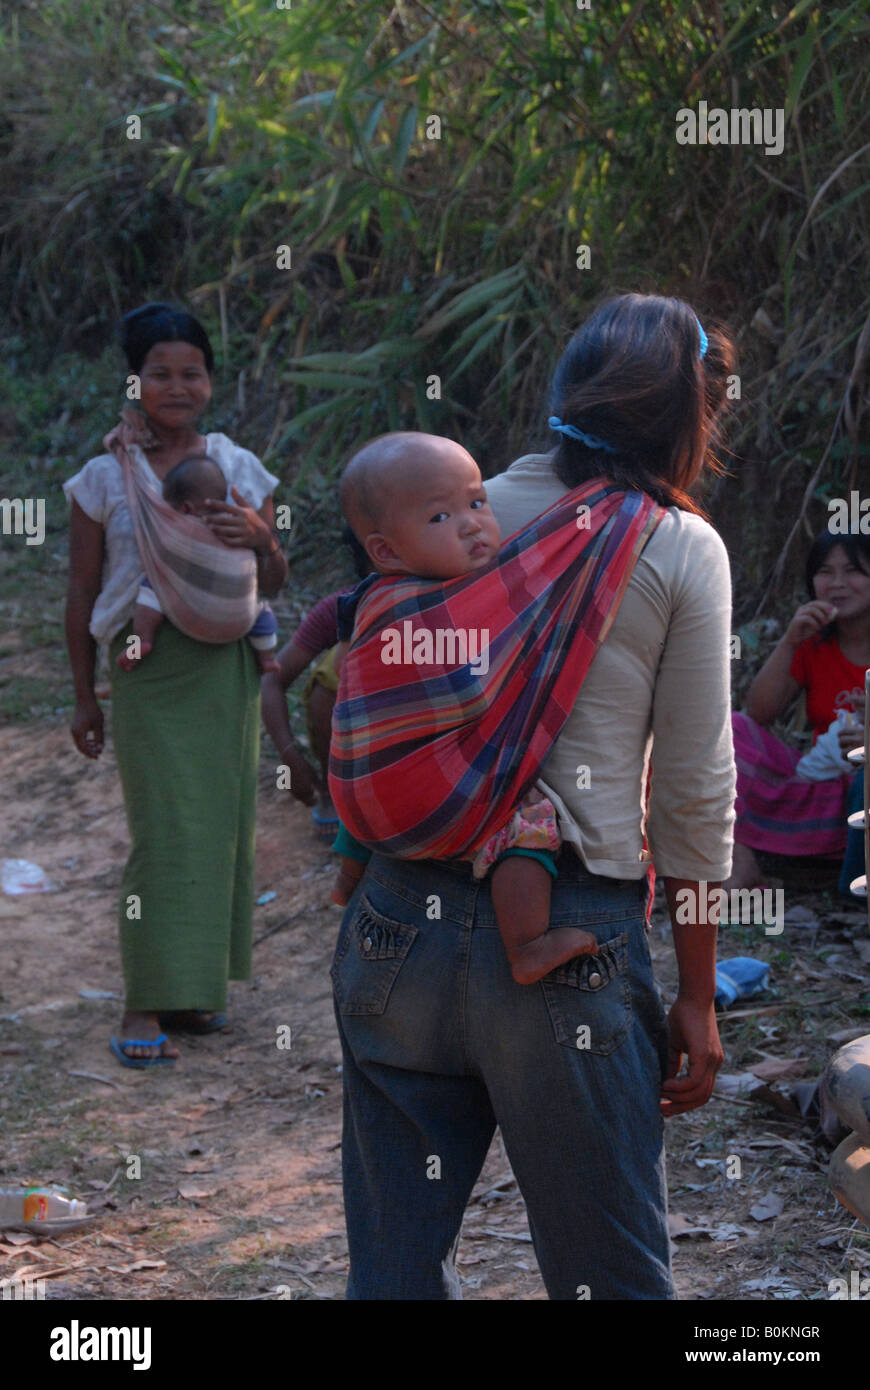 Wah minoranza di persone a thai confine birmano(Karen minoranza etnica gruppo) Foto Stock